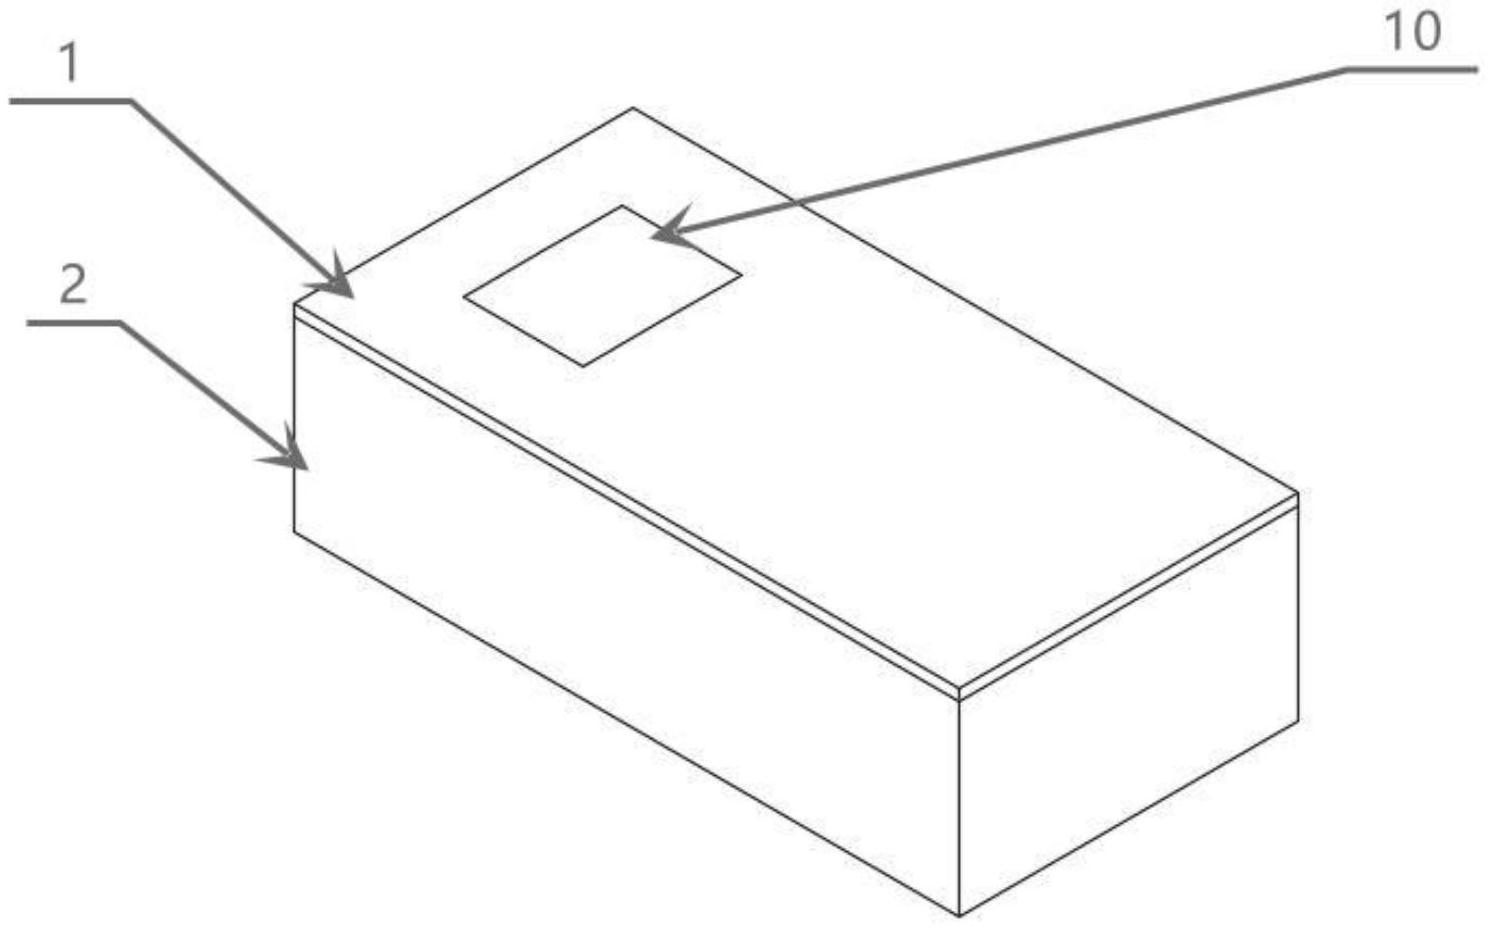 棺材的简单画法步骤图片